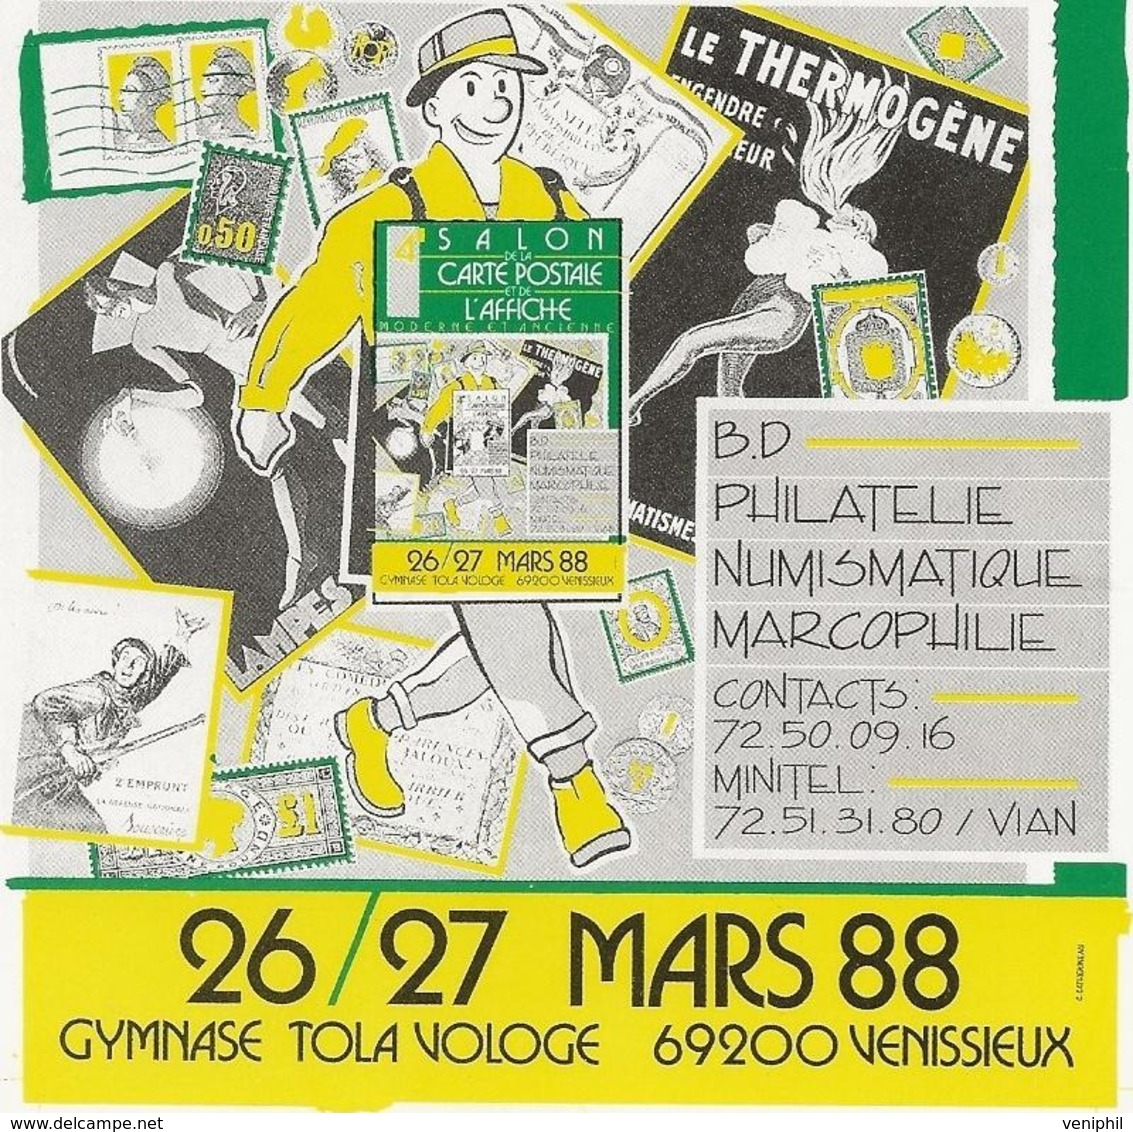 VENISSIEUX - 4 EME SALON DE LA CARTE POSTALE ET DE L'AFFICHE -MARS 1988 - Sammlerbörsen & Sammlerausstellungen